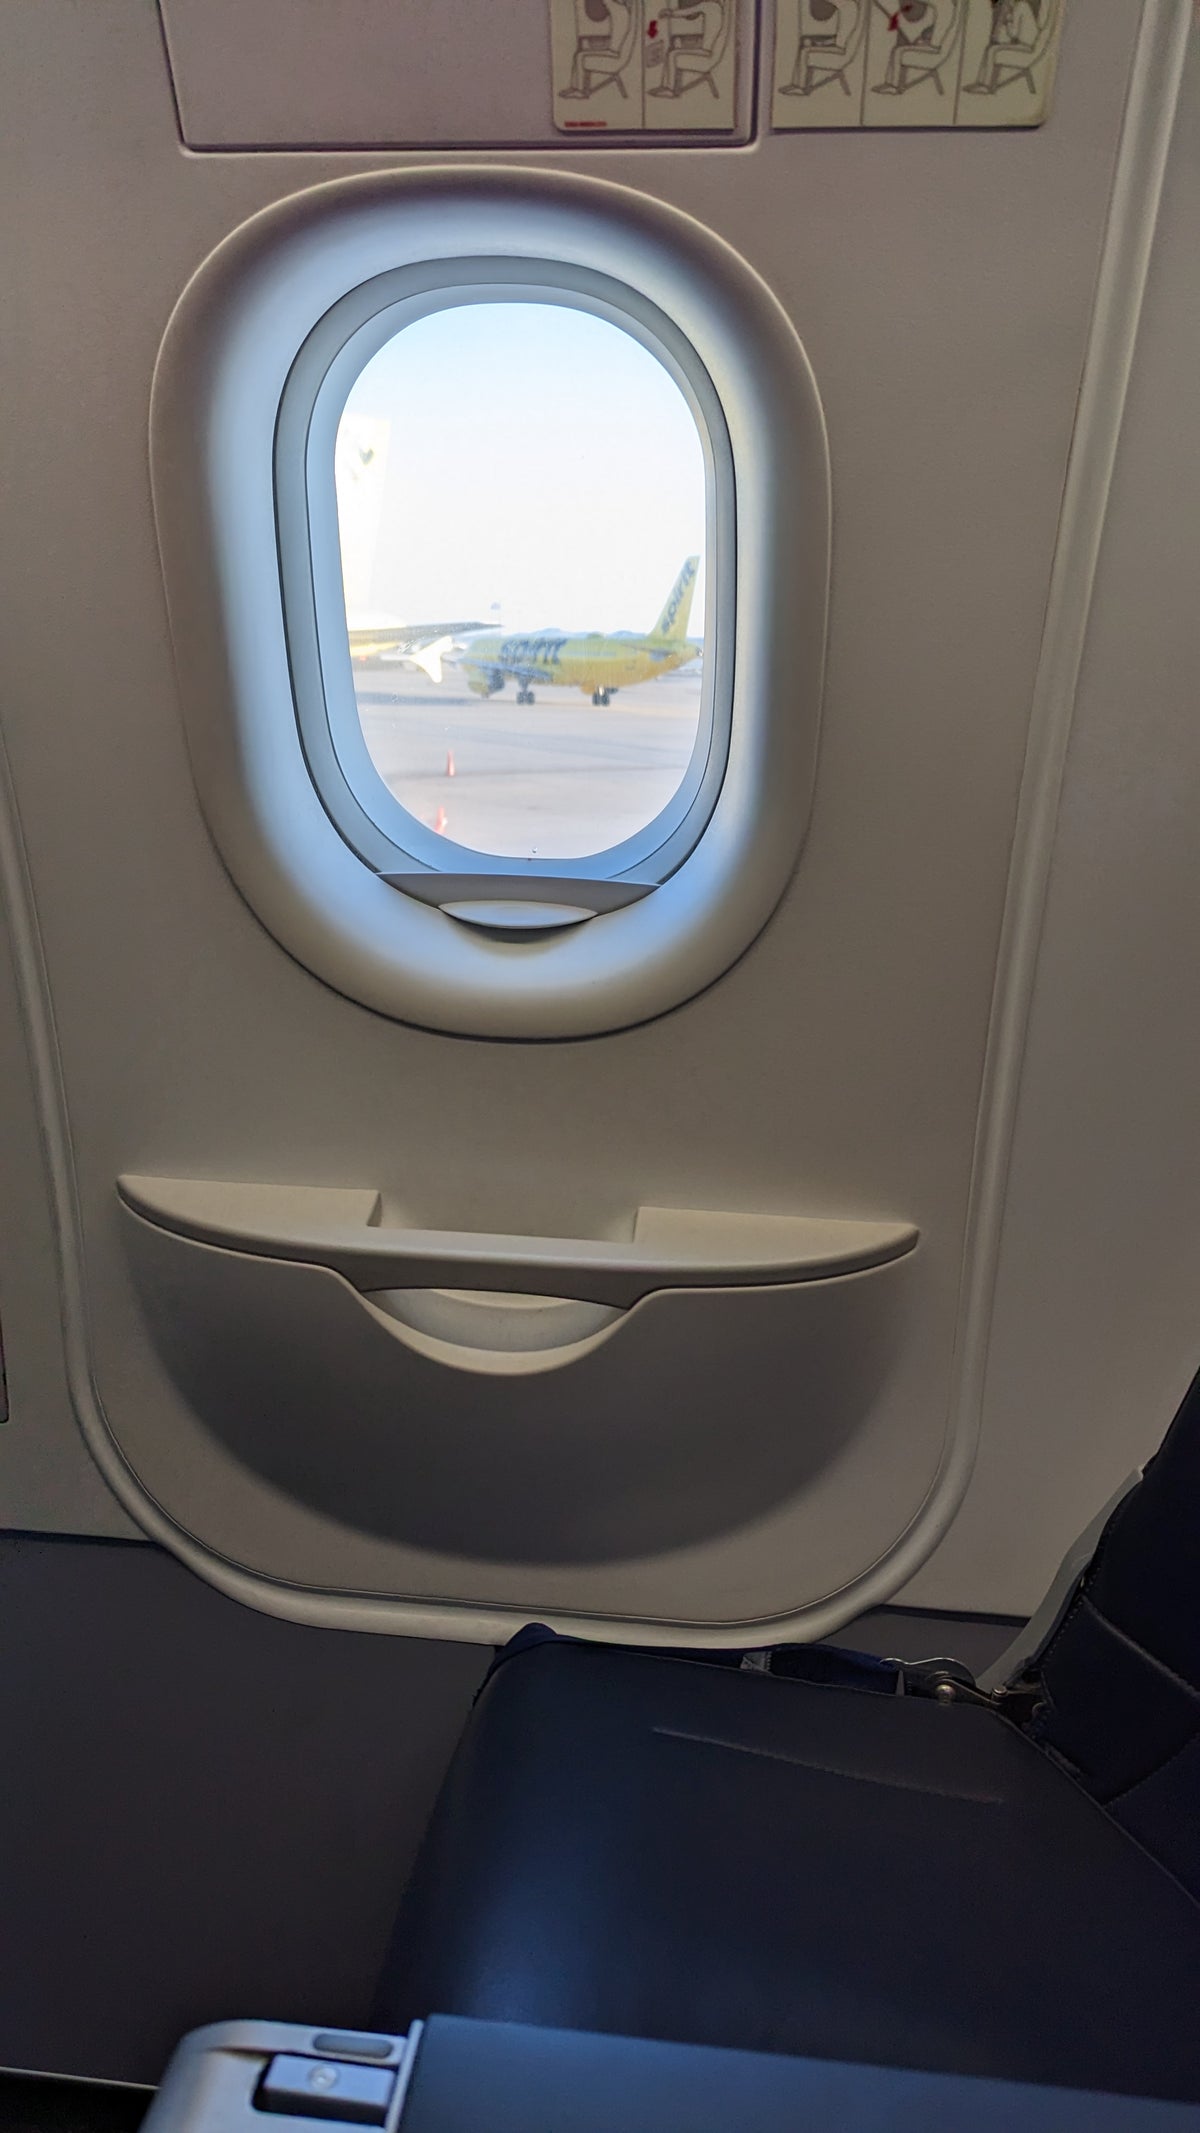 Harry Reid International Airport LAS Las Vegas boarding Spirit Airlines window view